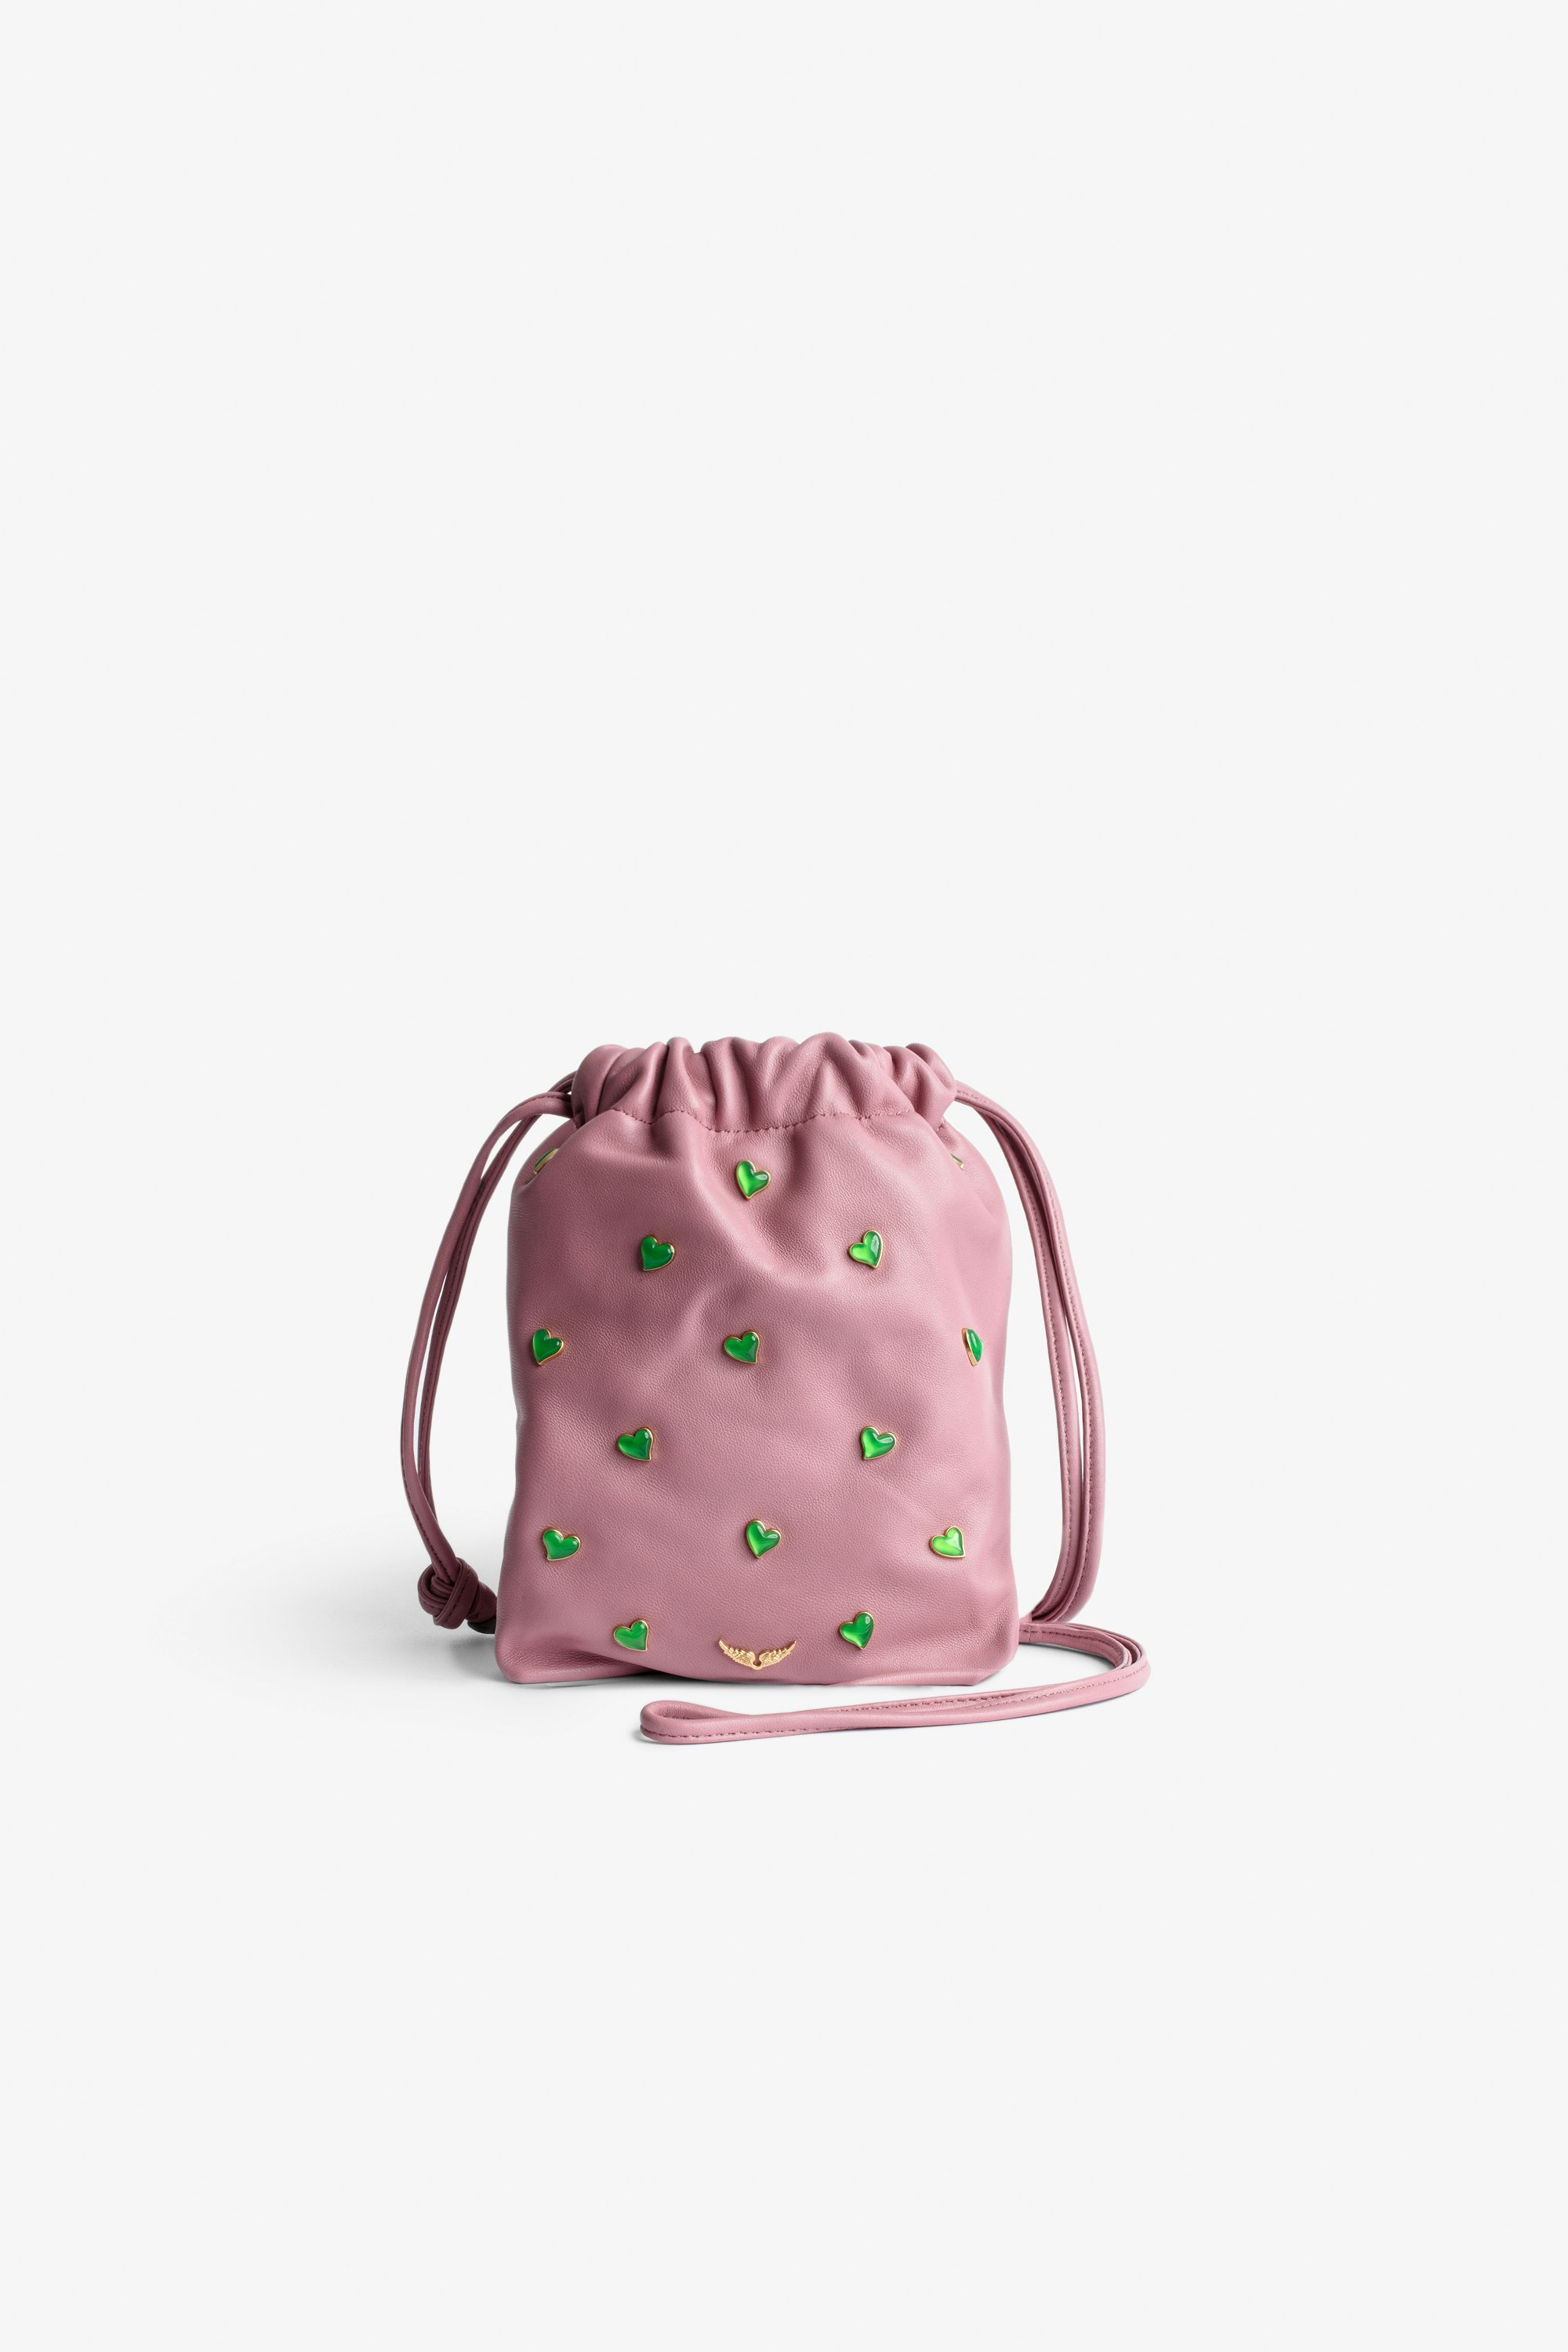 Tasche Rock To Go Damen-Beuteltasche aus rosafarbenem Leder mit grünen Kristallherzen